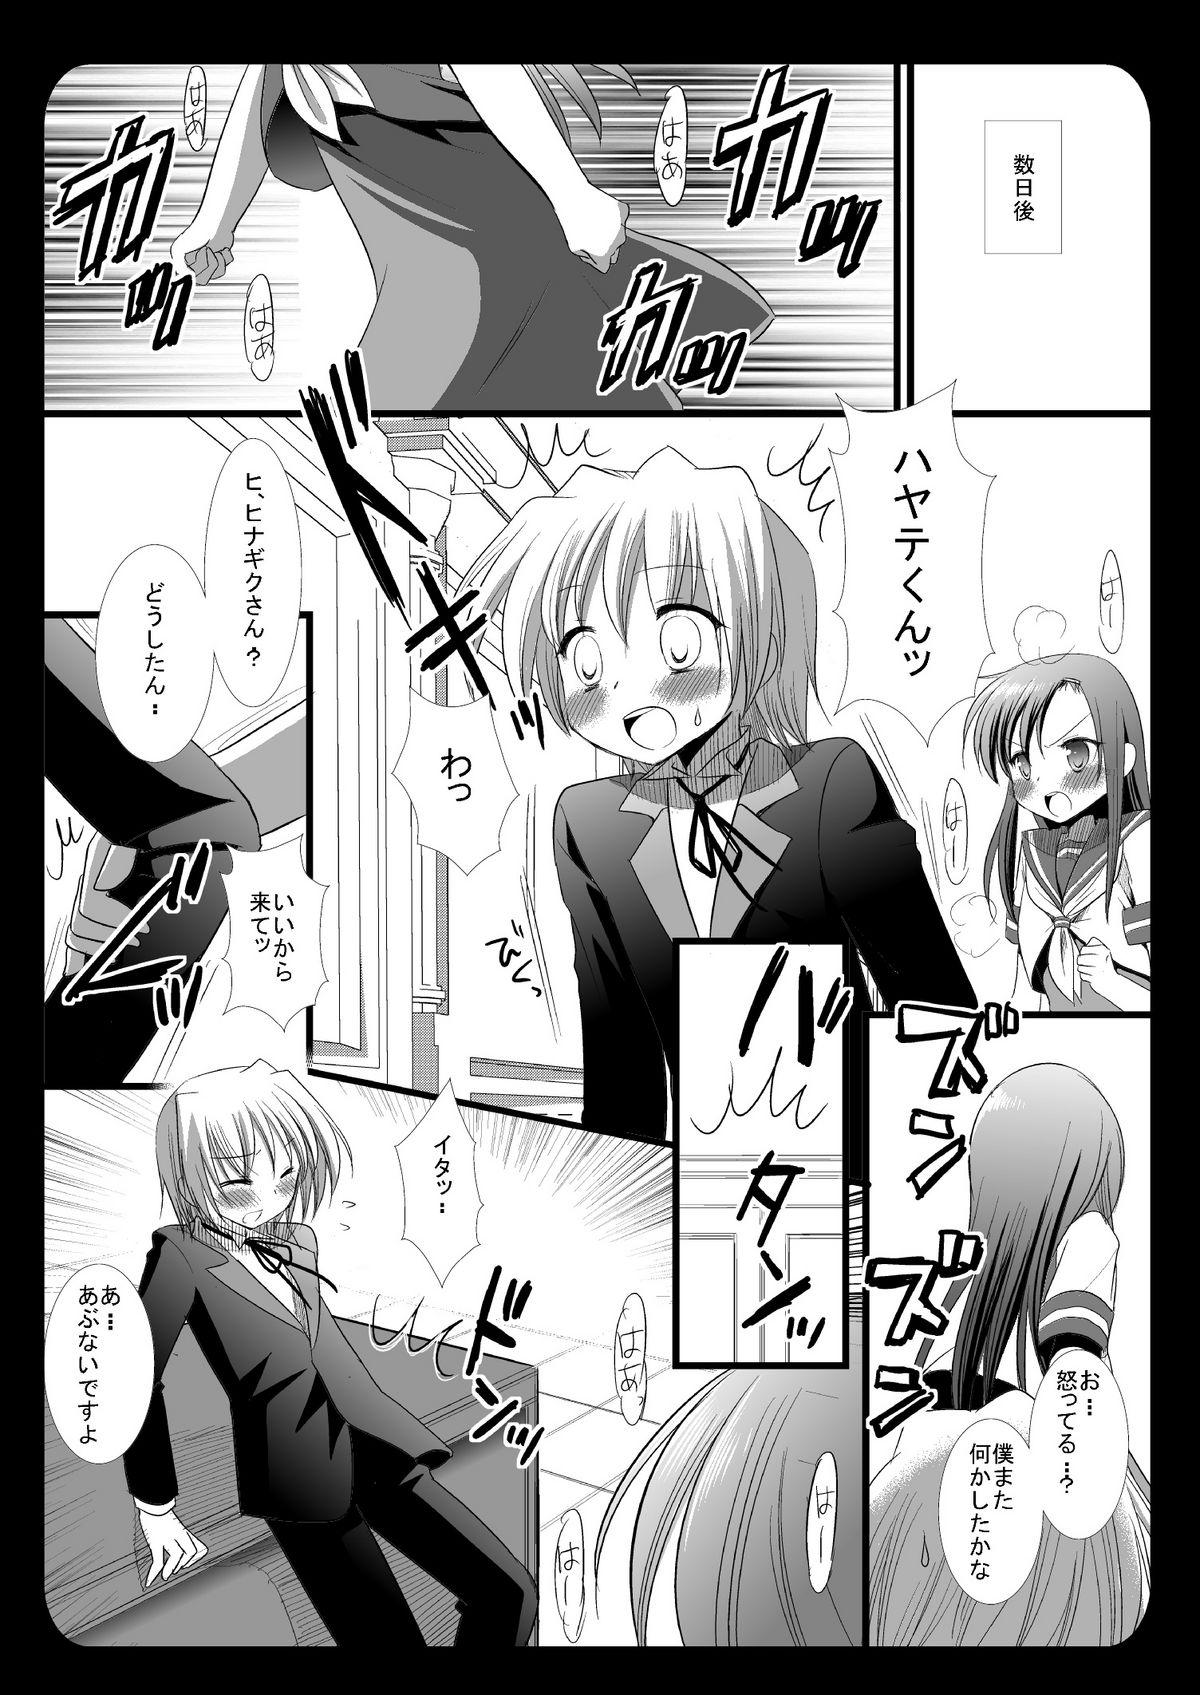 Tied Hinagiku no Himitsu 4 - Hayate no gotoku Cartoon - Page 7